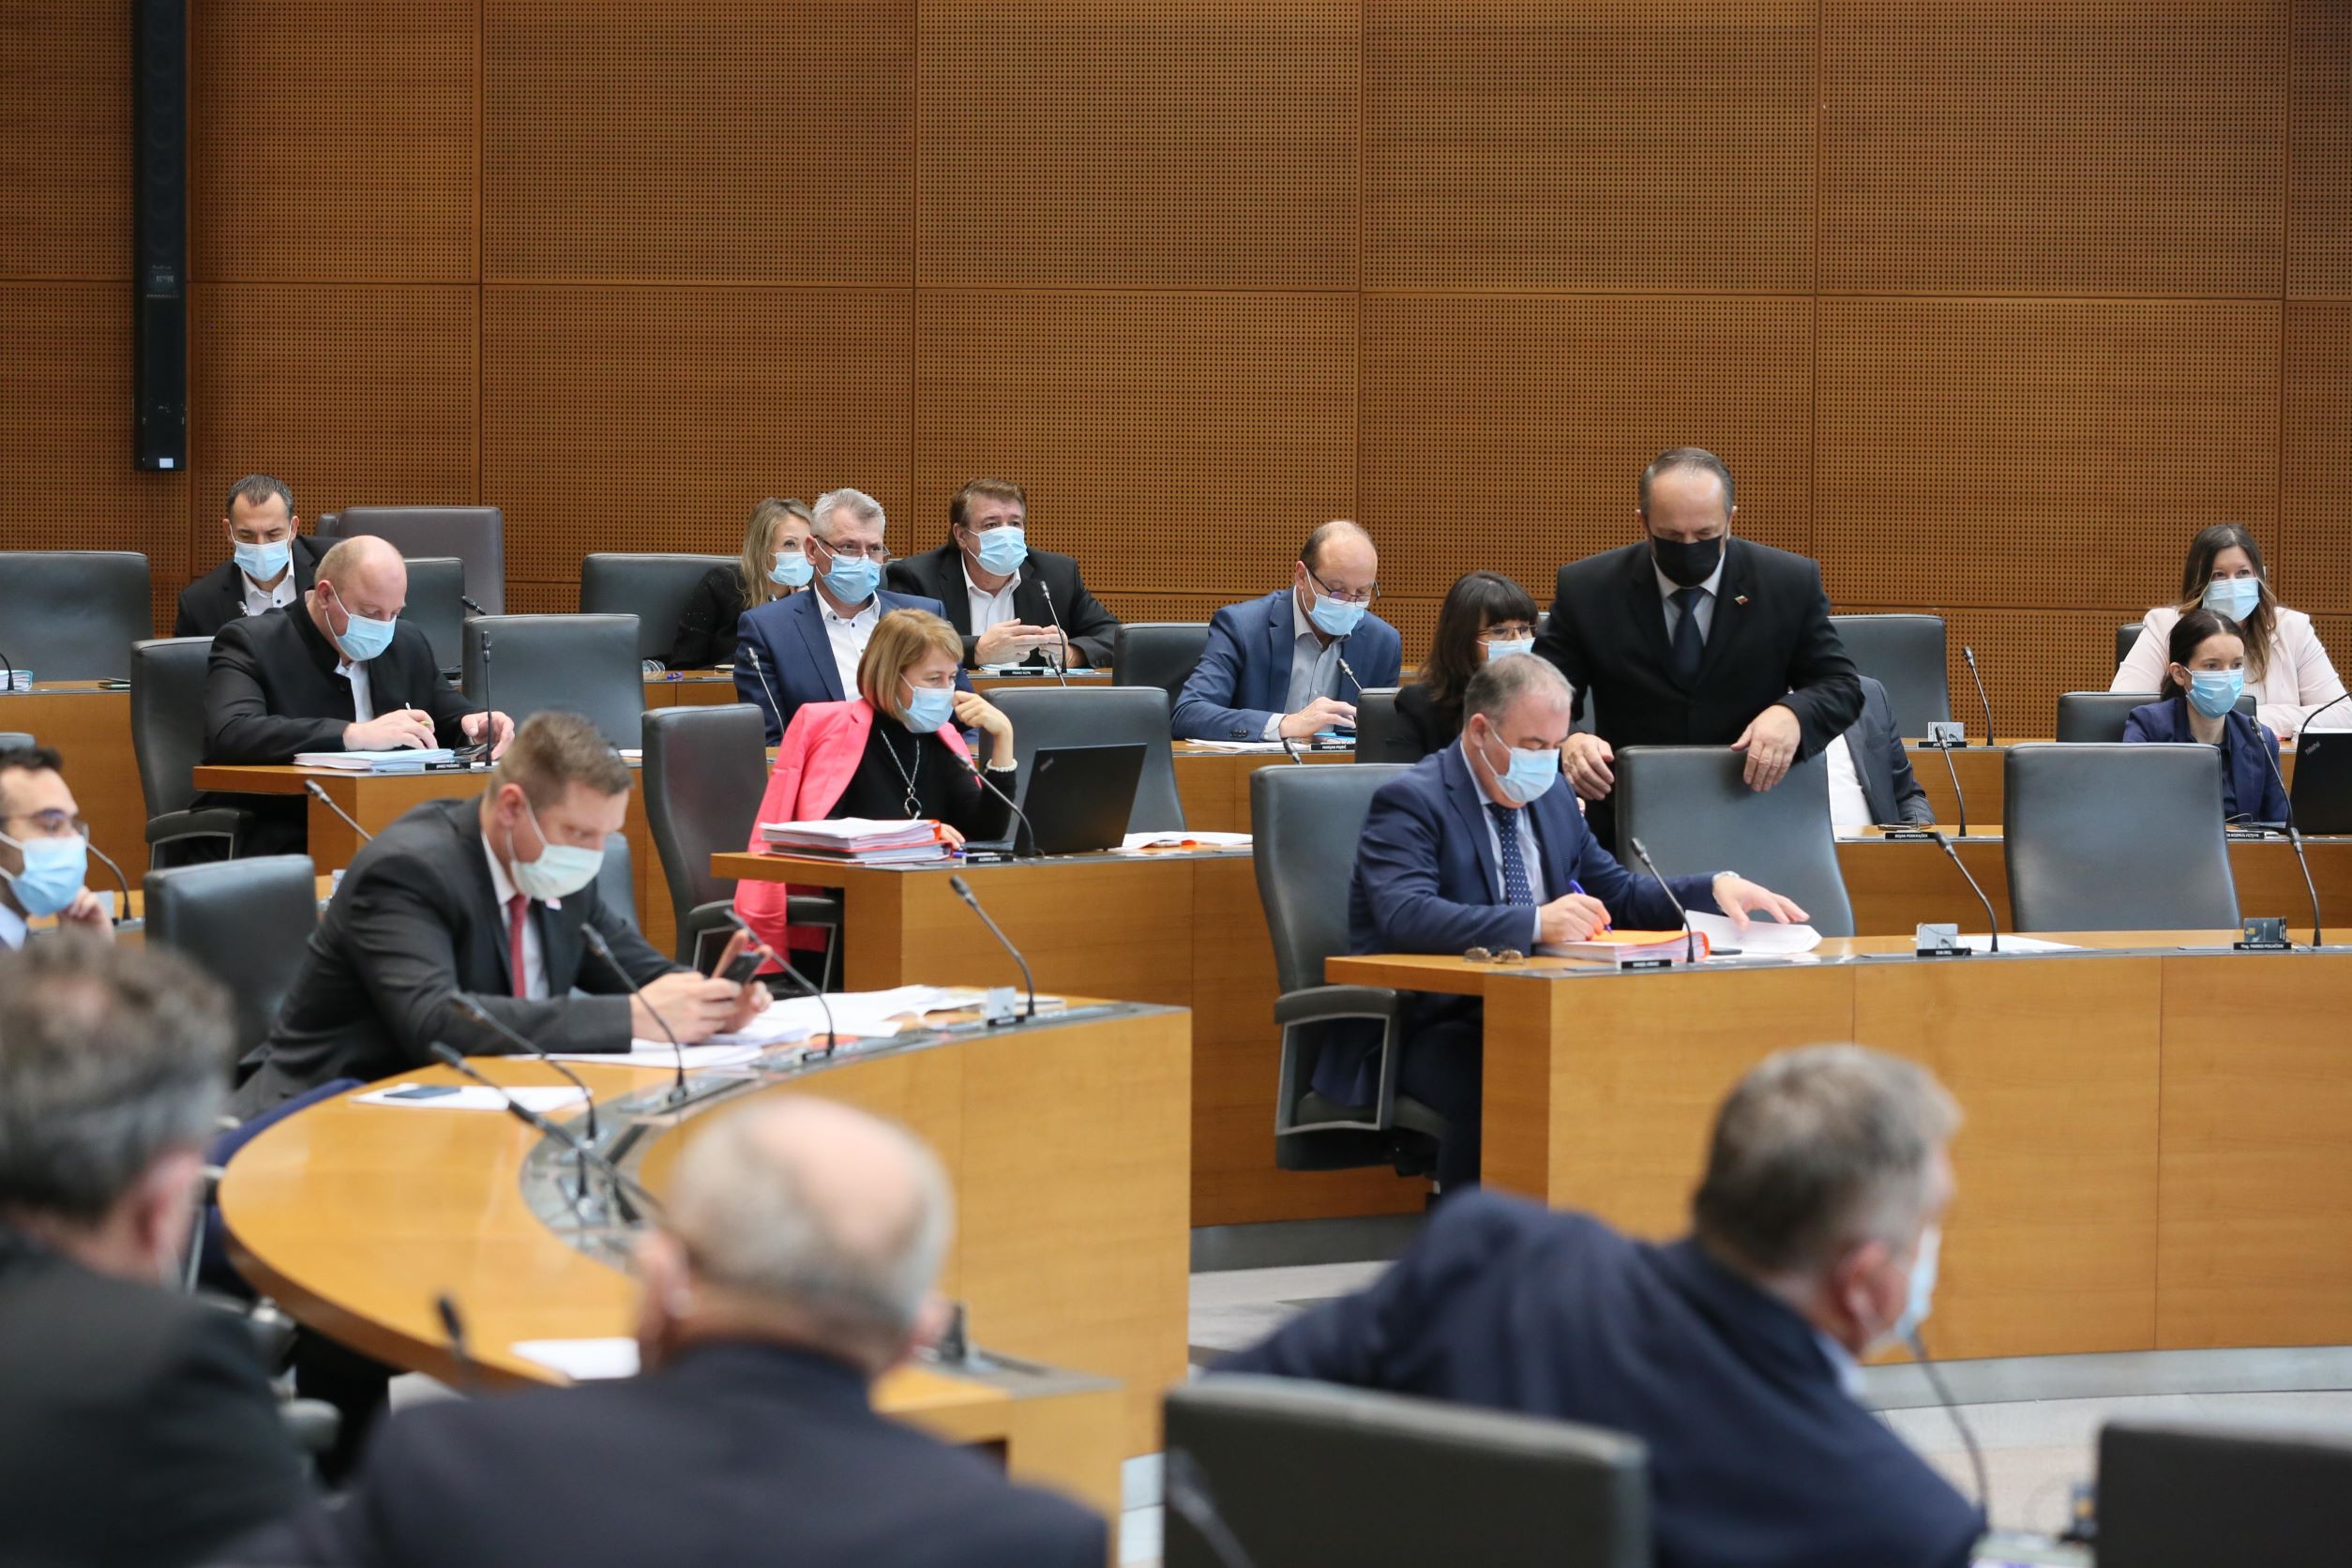 (VIDEO) Državni zbor, ki bo v petek odločal o interpelaciji leta proti ministru Andreju Vizjaku, danes začenja decembrsko sejo s poslanskimi vprašanji ministrom. Pred poslanskimi vprašanji Janez Janši še razprava o “korupciji in mafijskem upravljanju države”